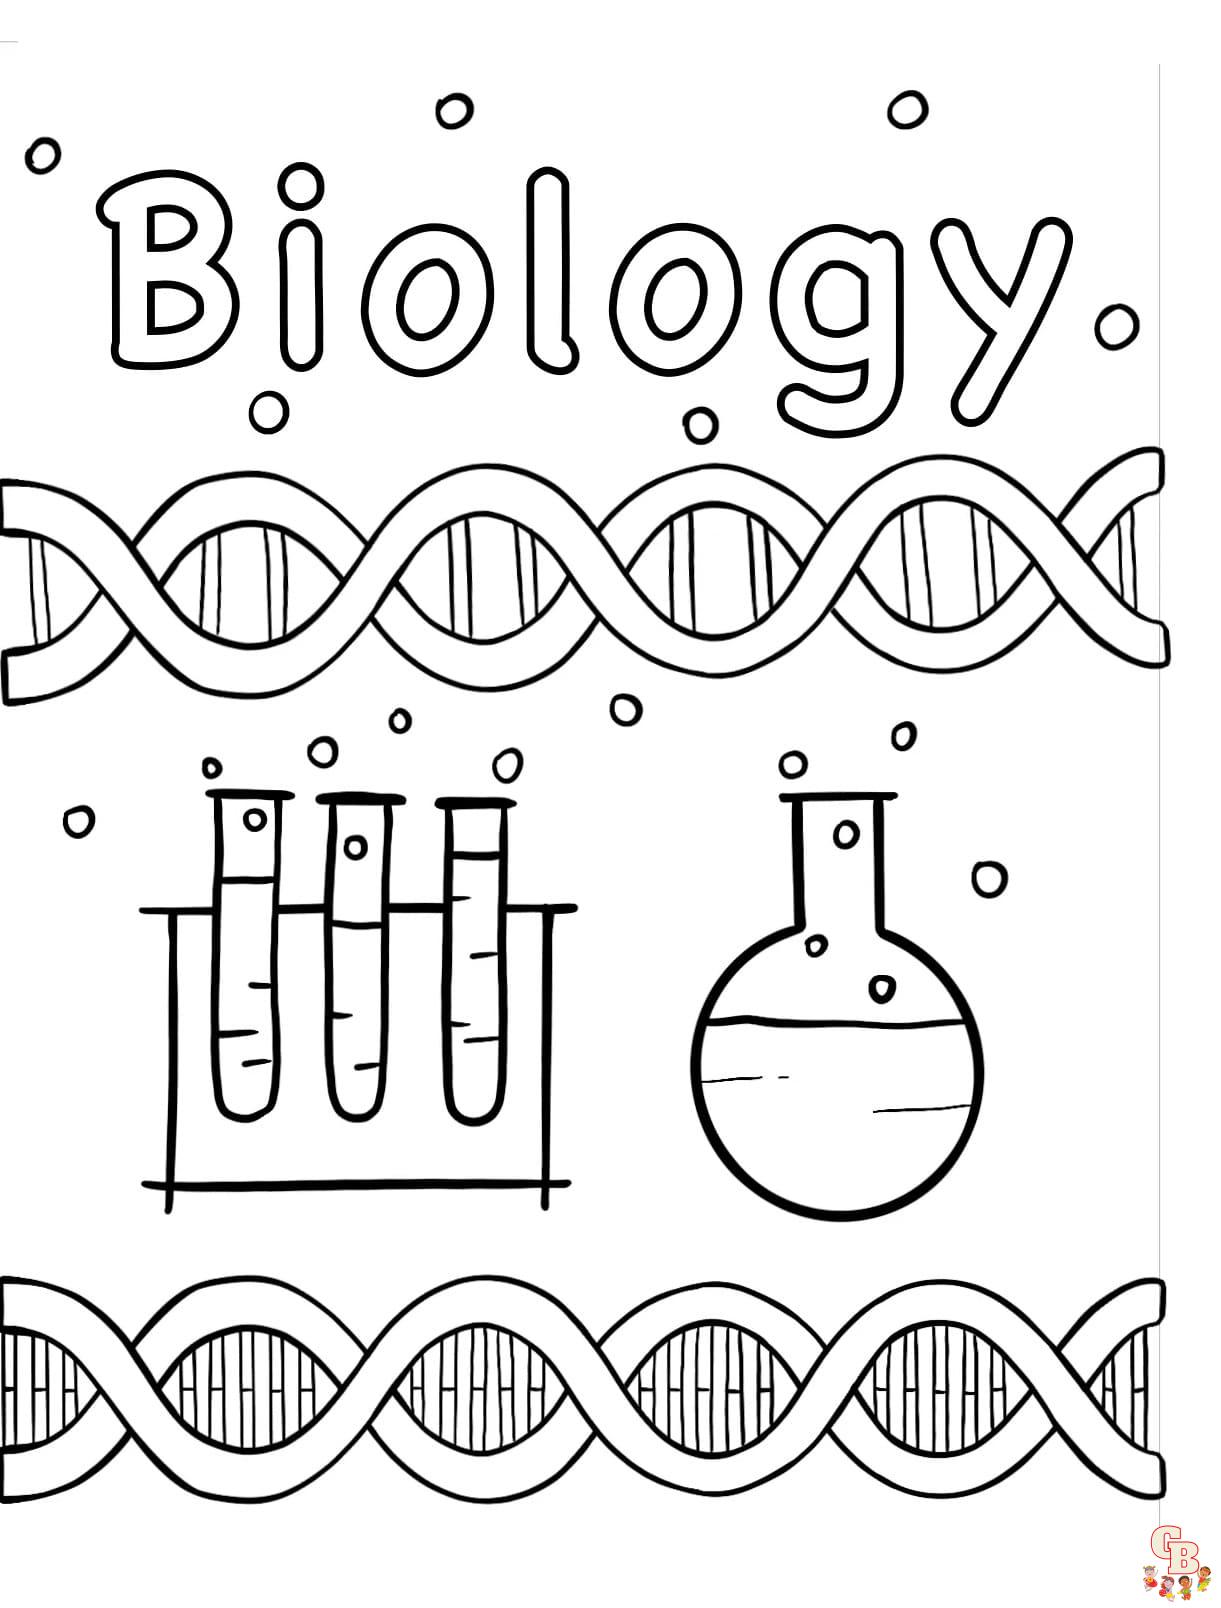 Printable Biology coloring sheets